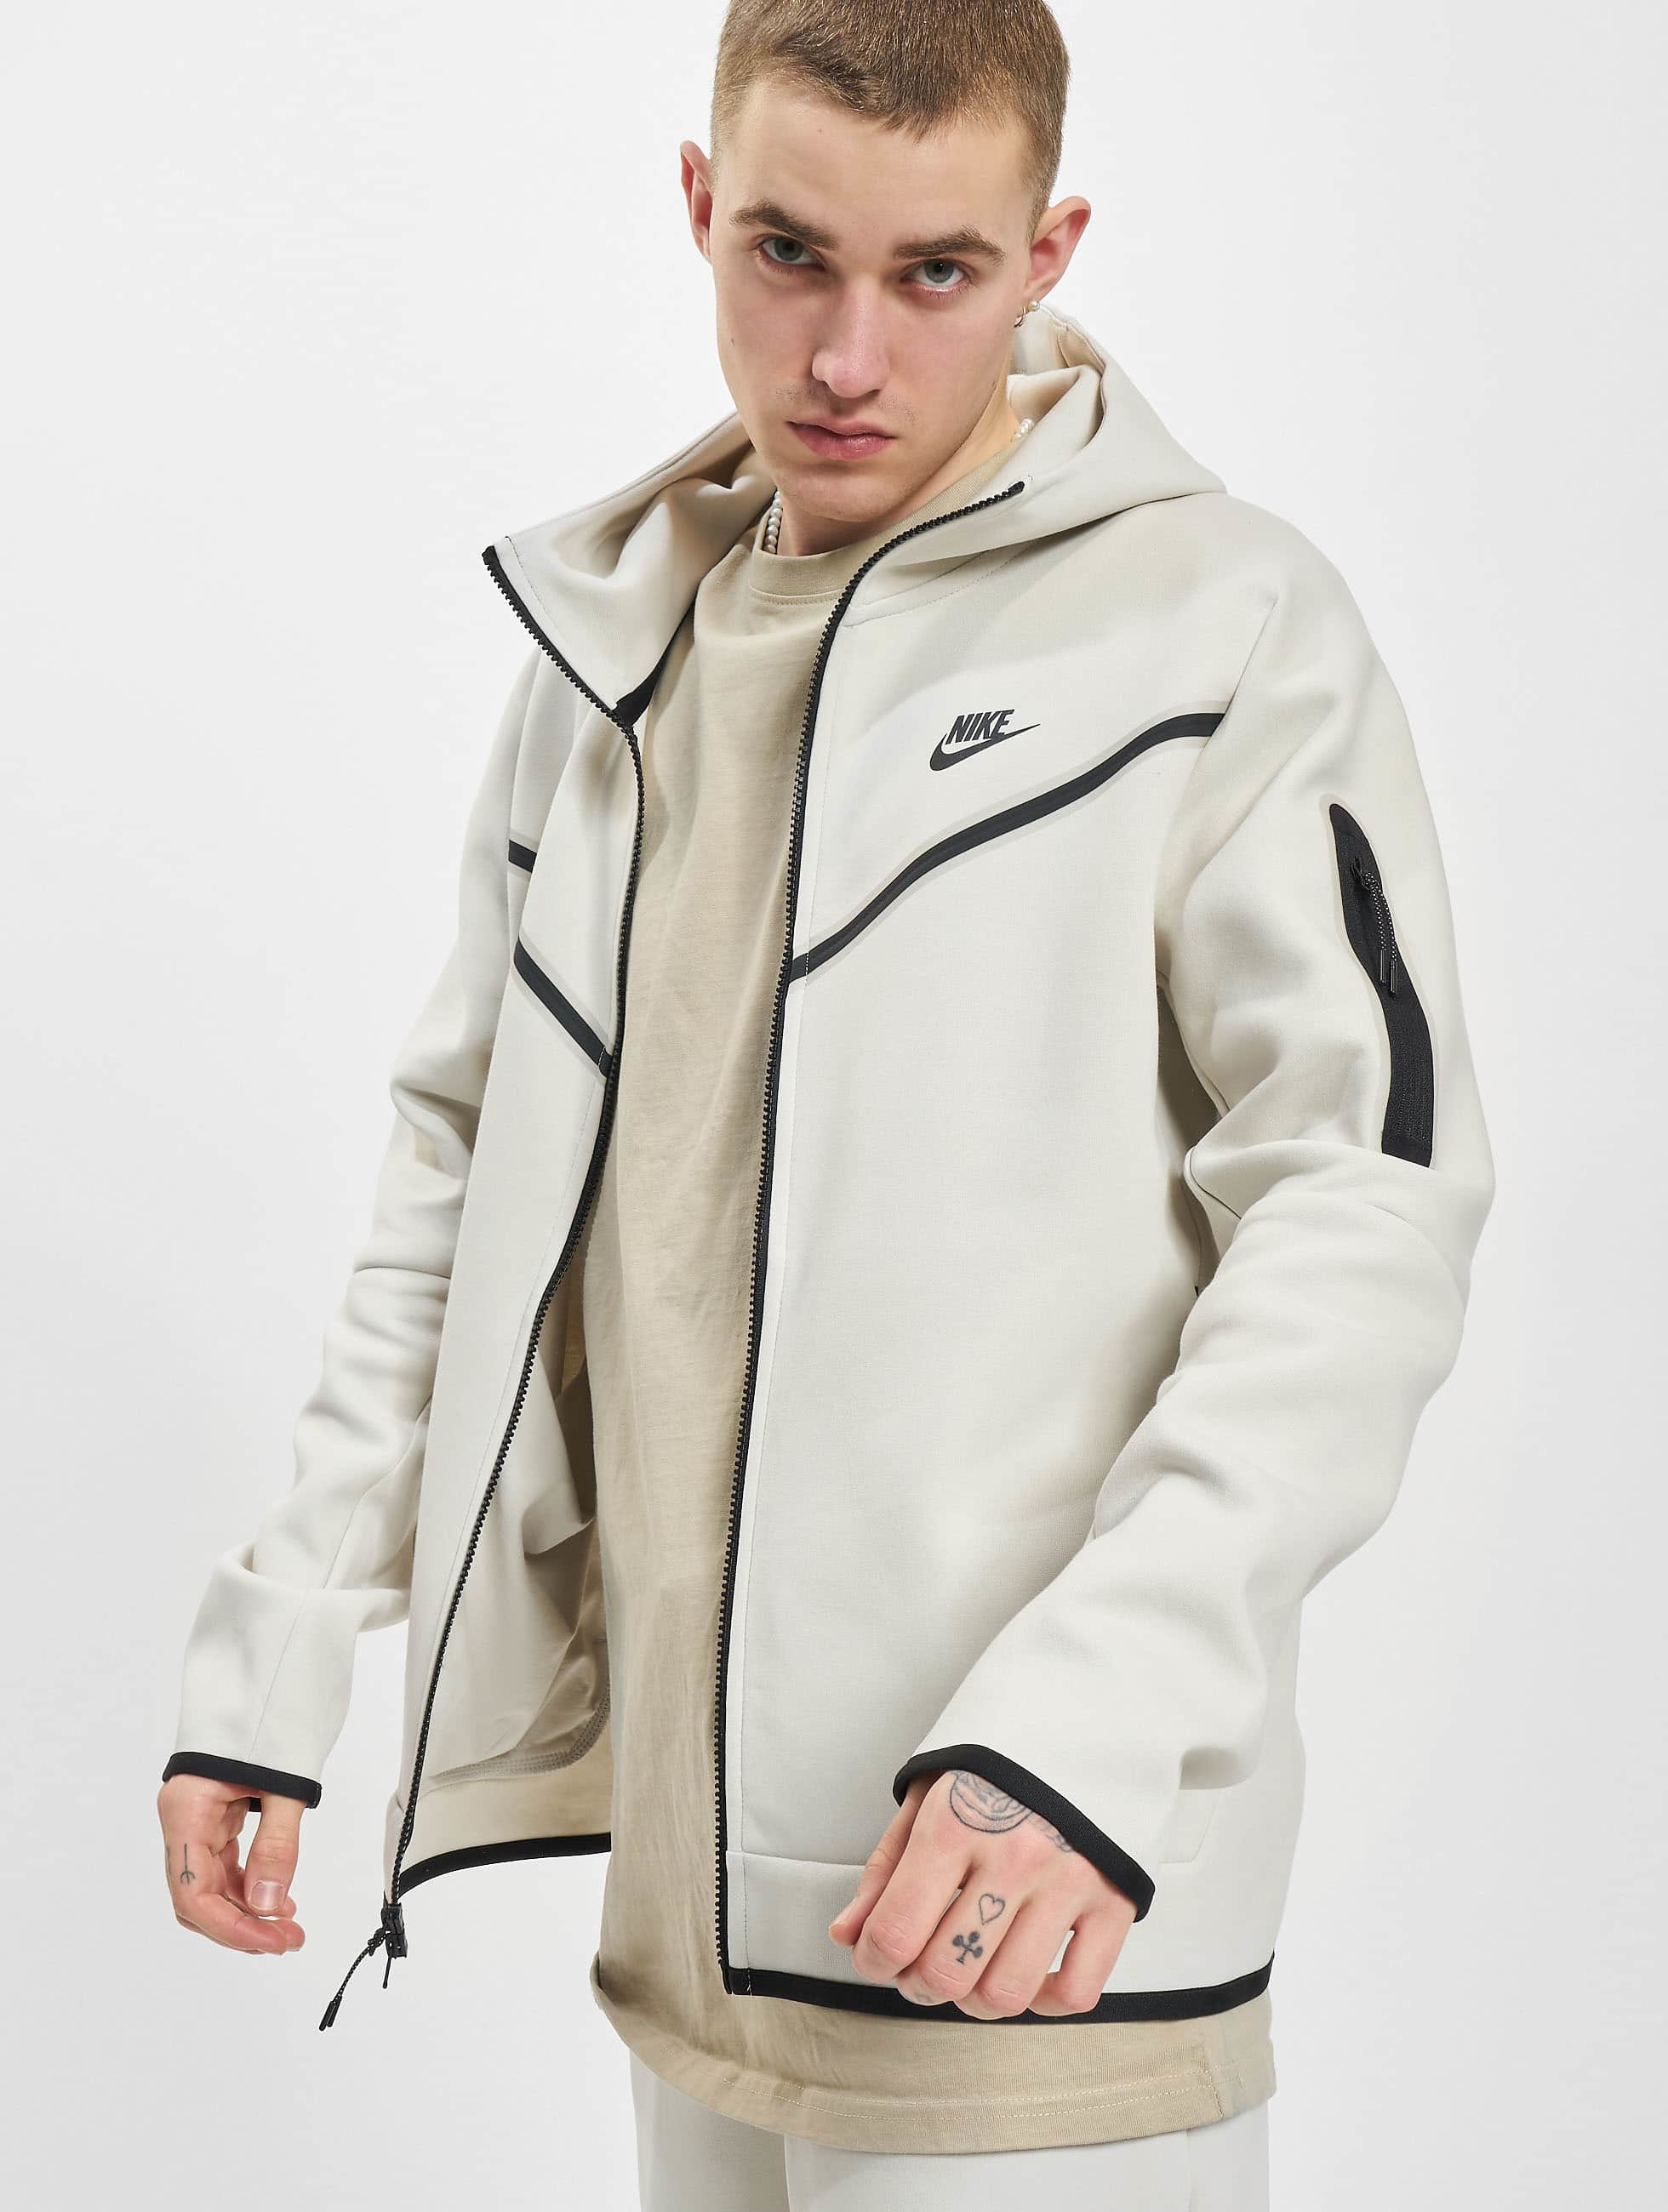 decaan linnen ga verder Nike bovenstuk / Sweatvest Sportswear Tech Fleece in beige 975207